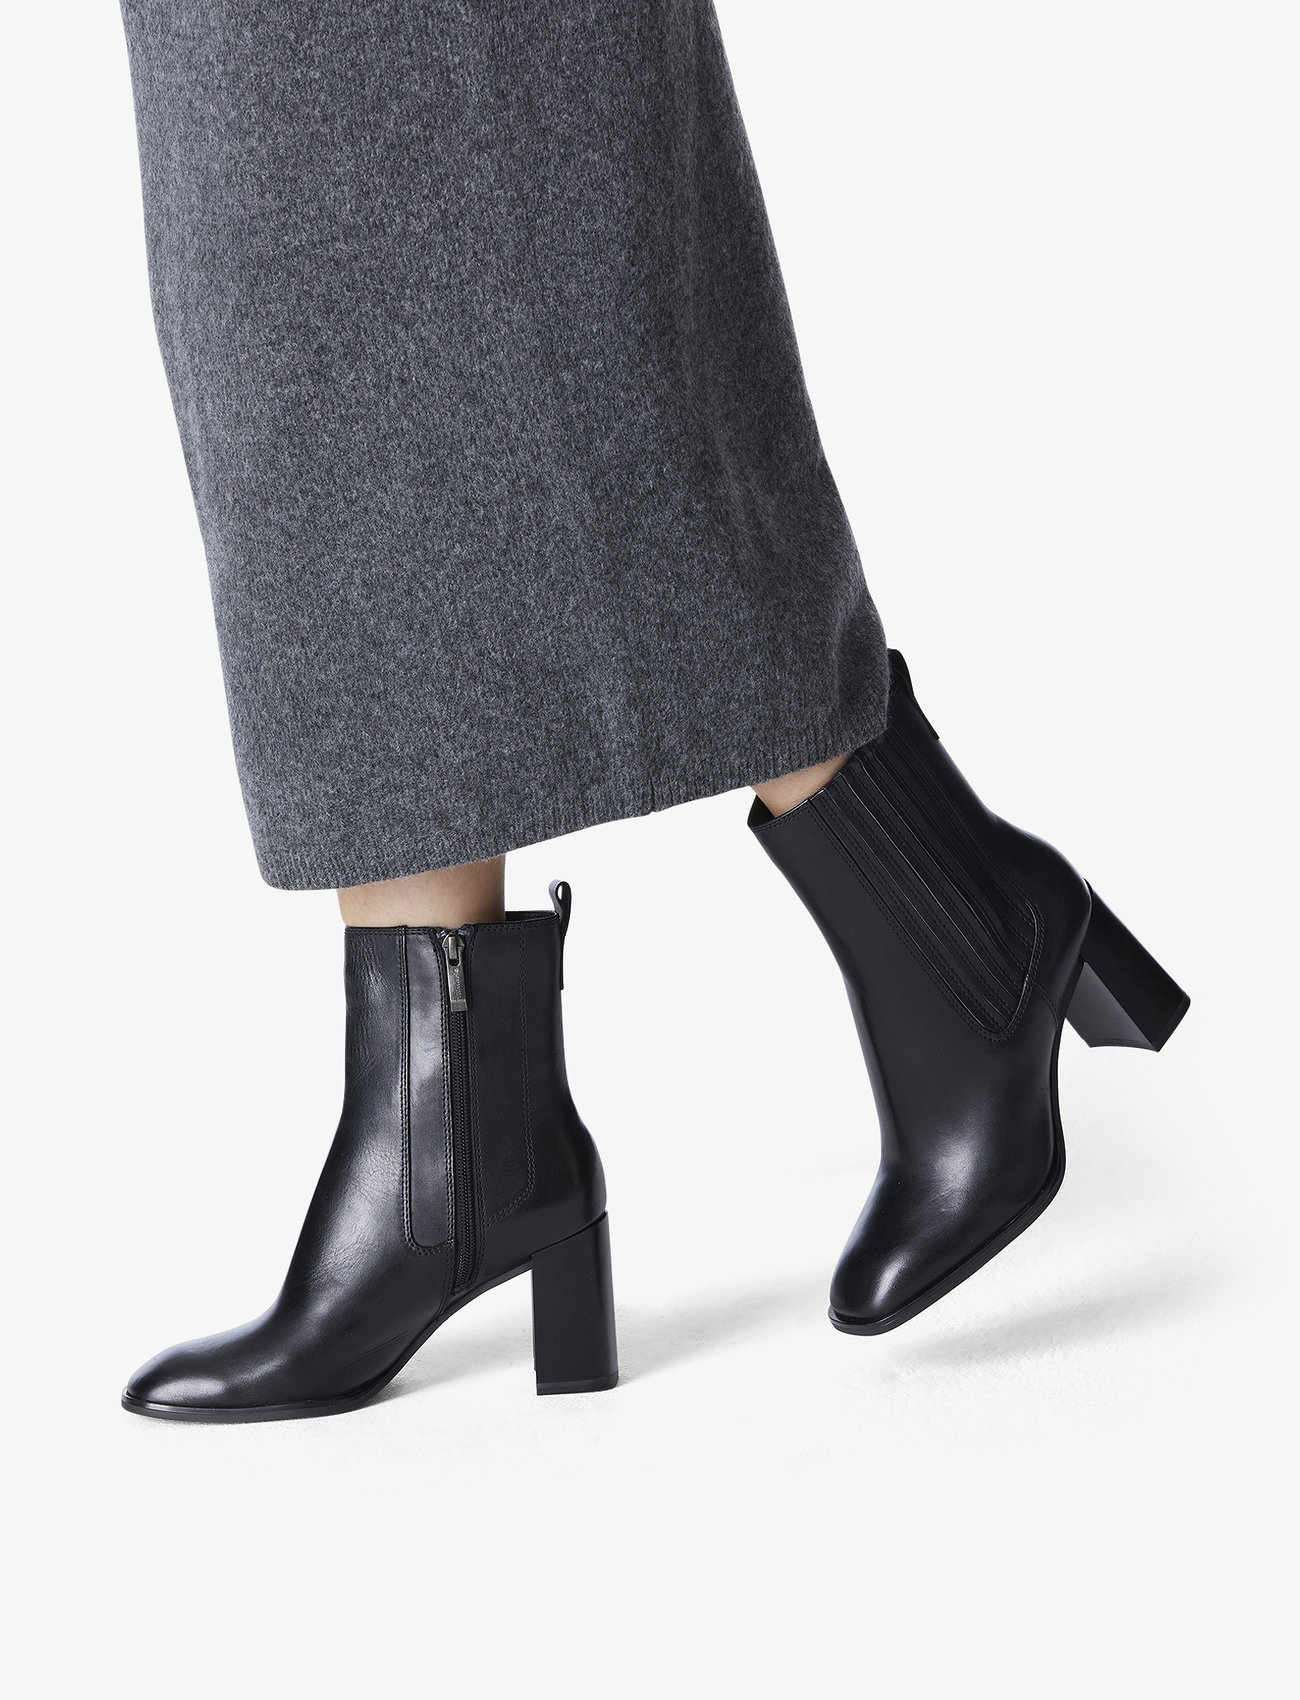 Tamaris - Women Boots - korolliset nilkkurit - black - 1